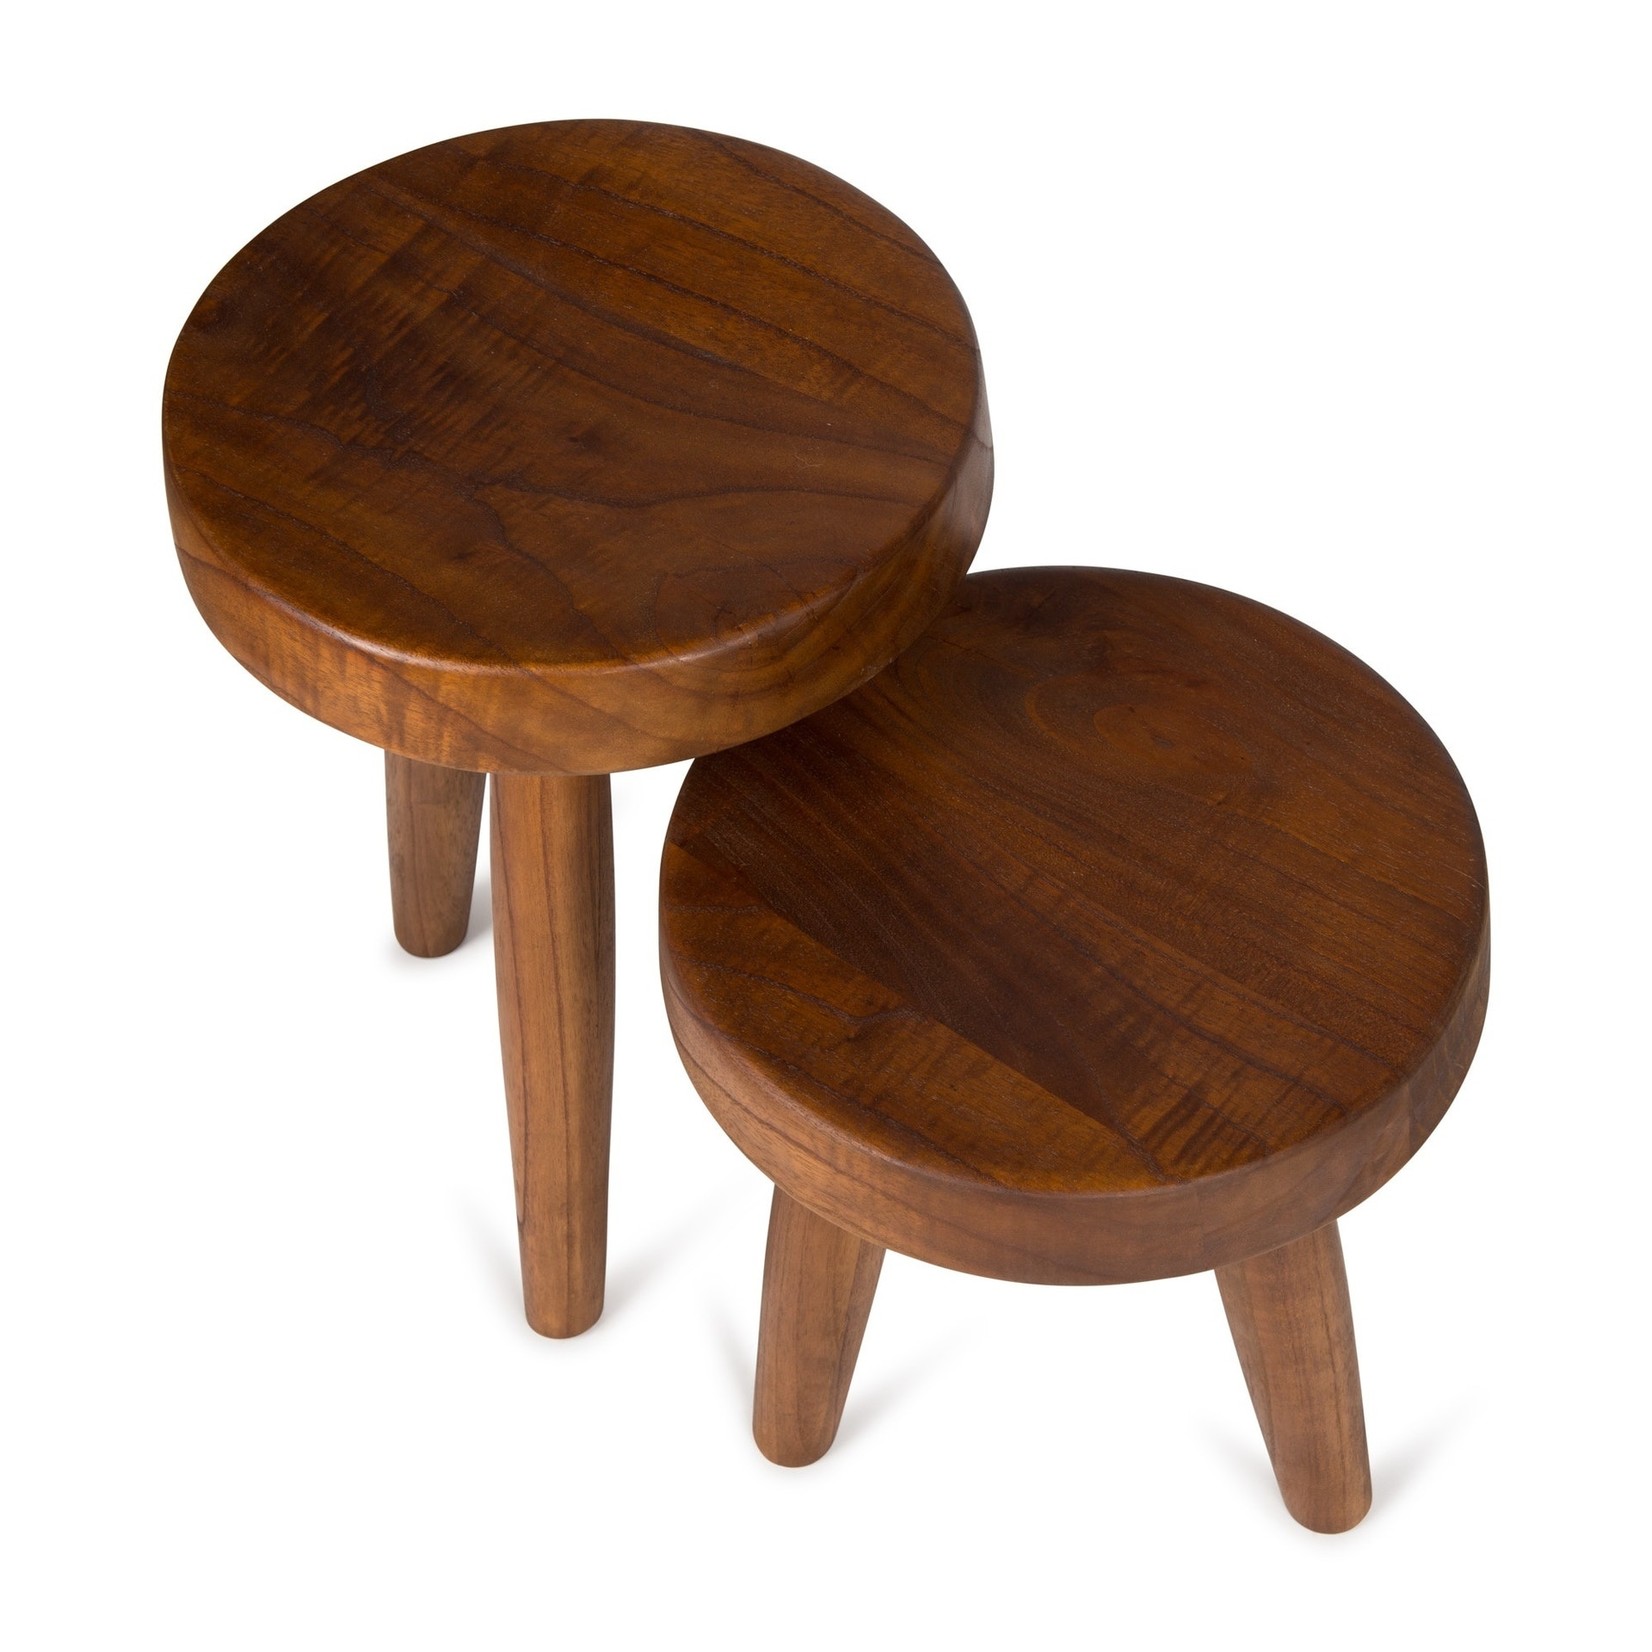 DETJER DETJER - Chandigarh style wooden stool - Dark brown